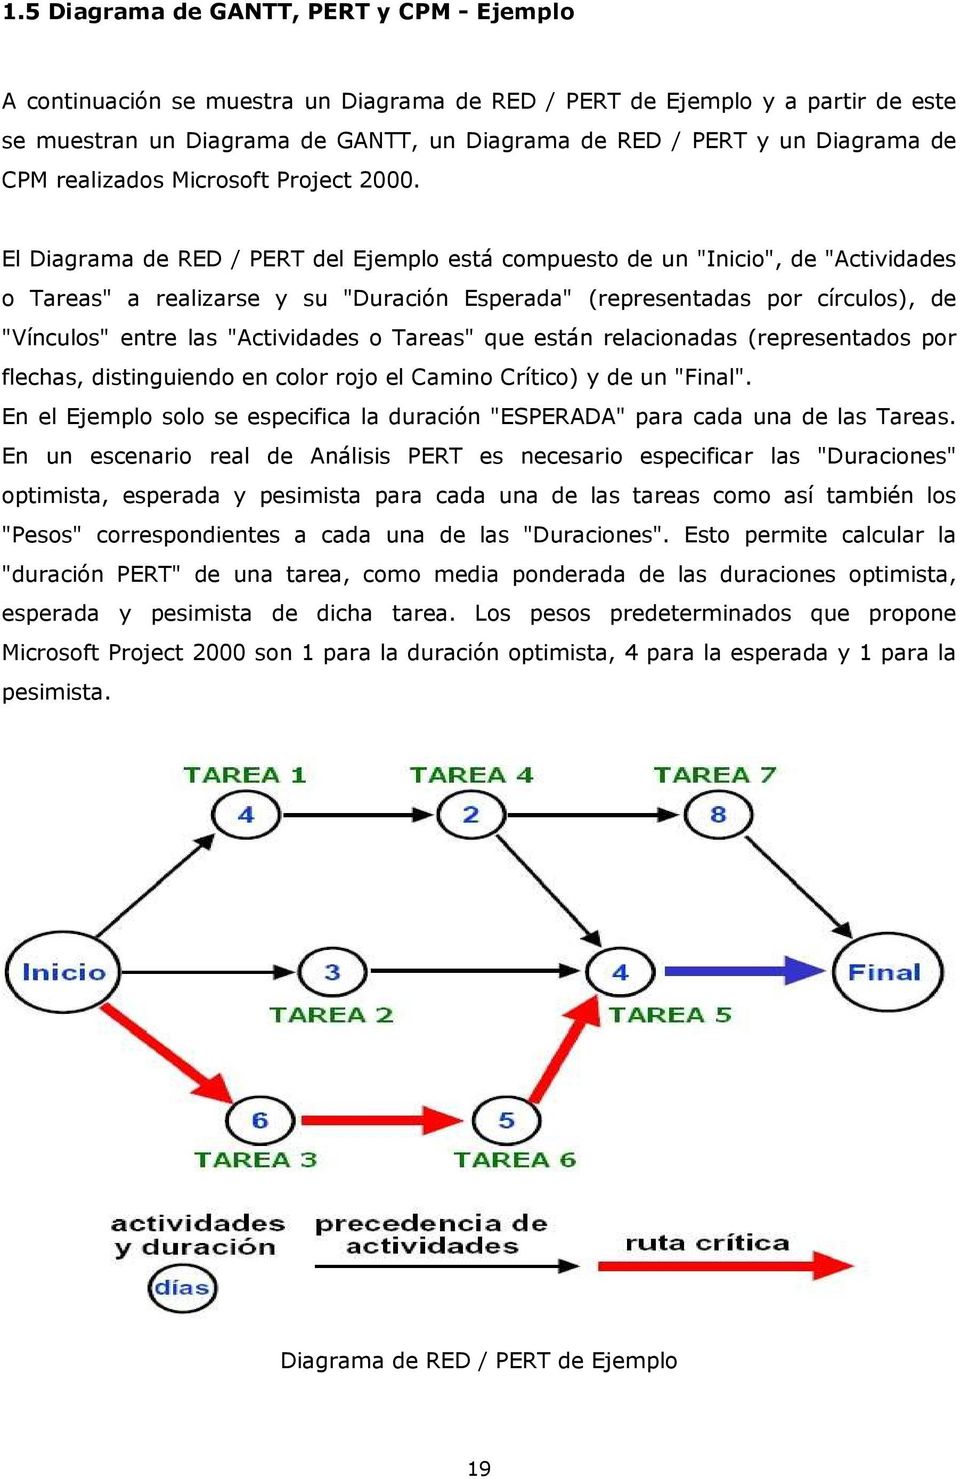 El Diagrama de RED / PERT del Ejemplo está compuesto de un "Inicio", de "Actividades o Tareas" a realizarse y su "Duración Esperada" (representadas por círculos), de "Vínculos" entre las "Actividades